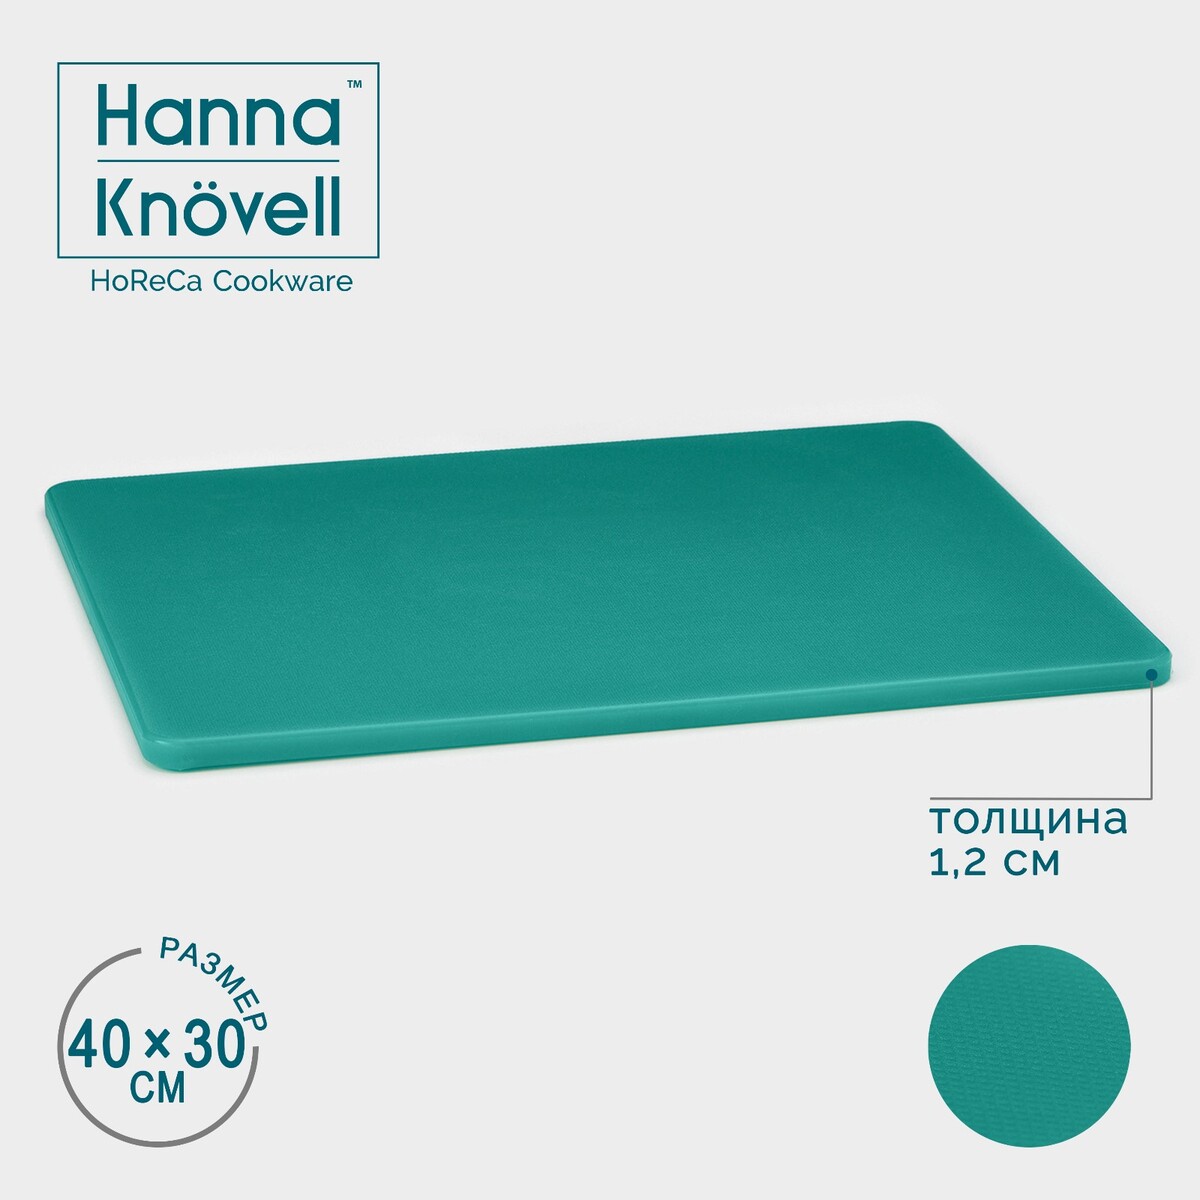 Доска профессиональная разделочная hanna knövell, 40×30×1,2 см, цвет зеленый